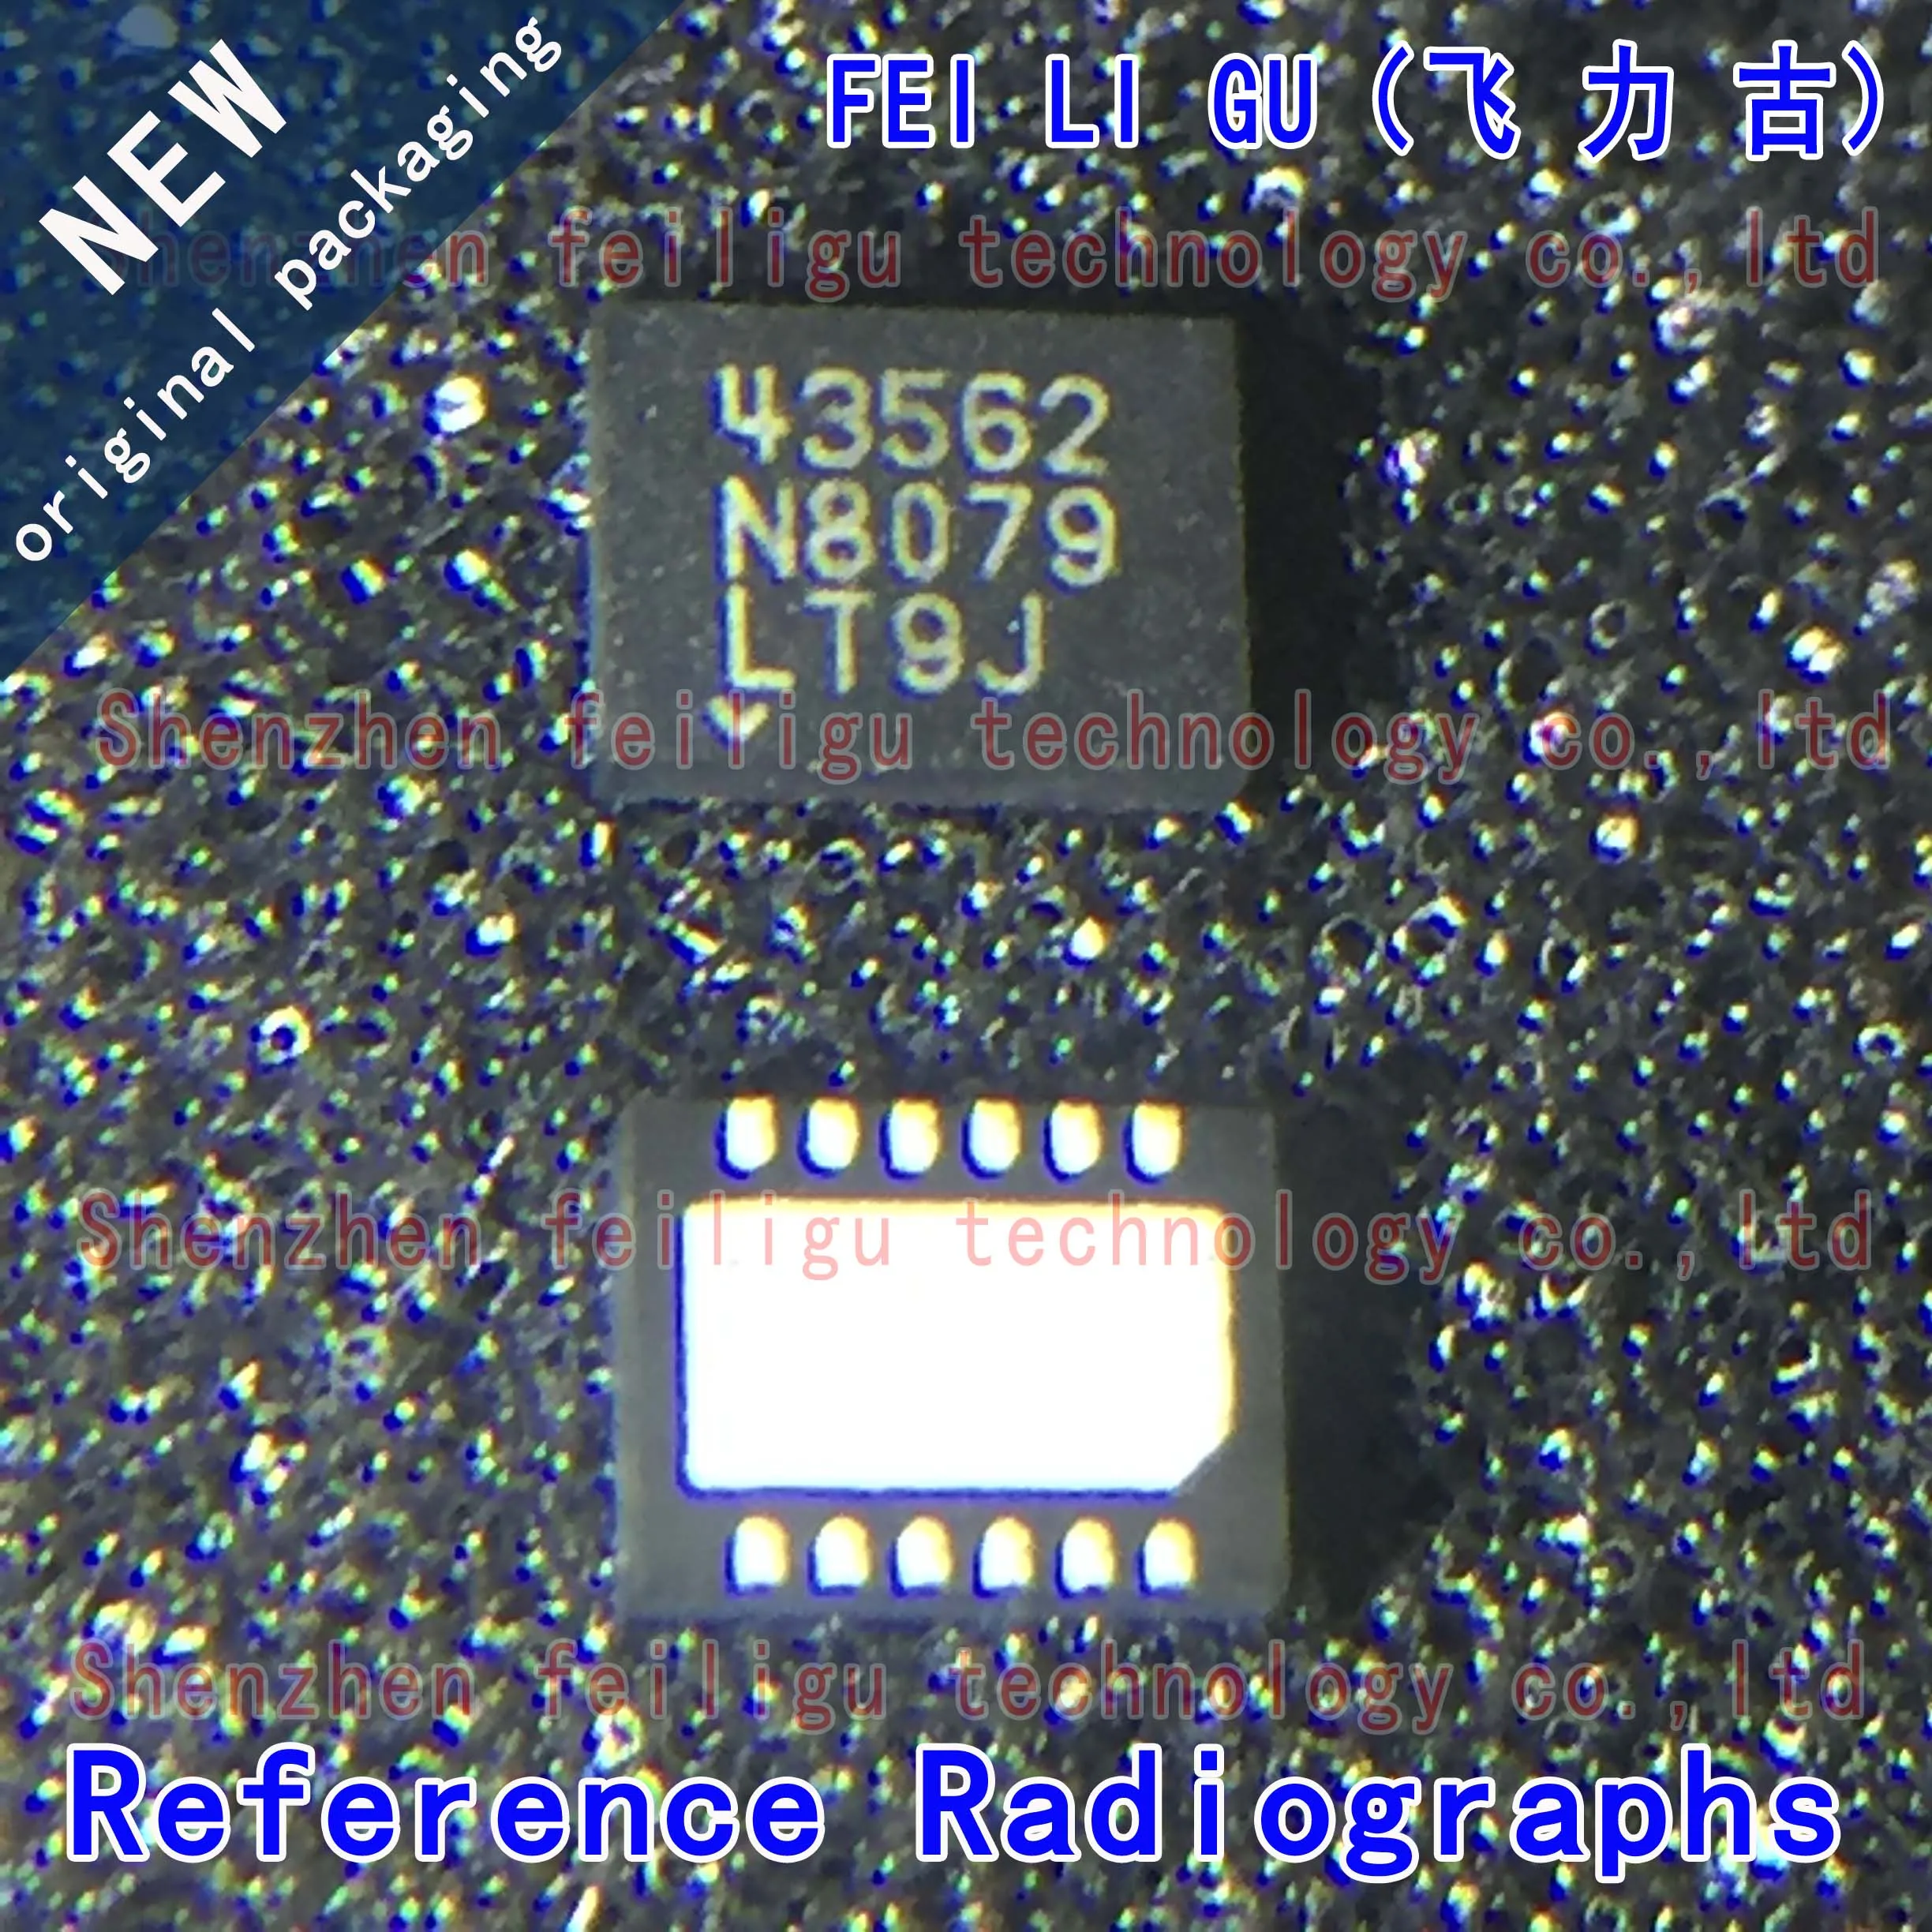 1~30PCS 100% New Original LT4356IDE-2#TRPBF LT4356IDE-2 LT4356IDE LT4356 Silkscreen 43562 QFN12 Surge Protector Chip new original lt4356hde 2 trpbf lt4356hde 2 lt4356hde lt4356 silkscreen 43562 qfn12 surge protector chip electronic components